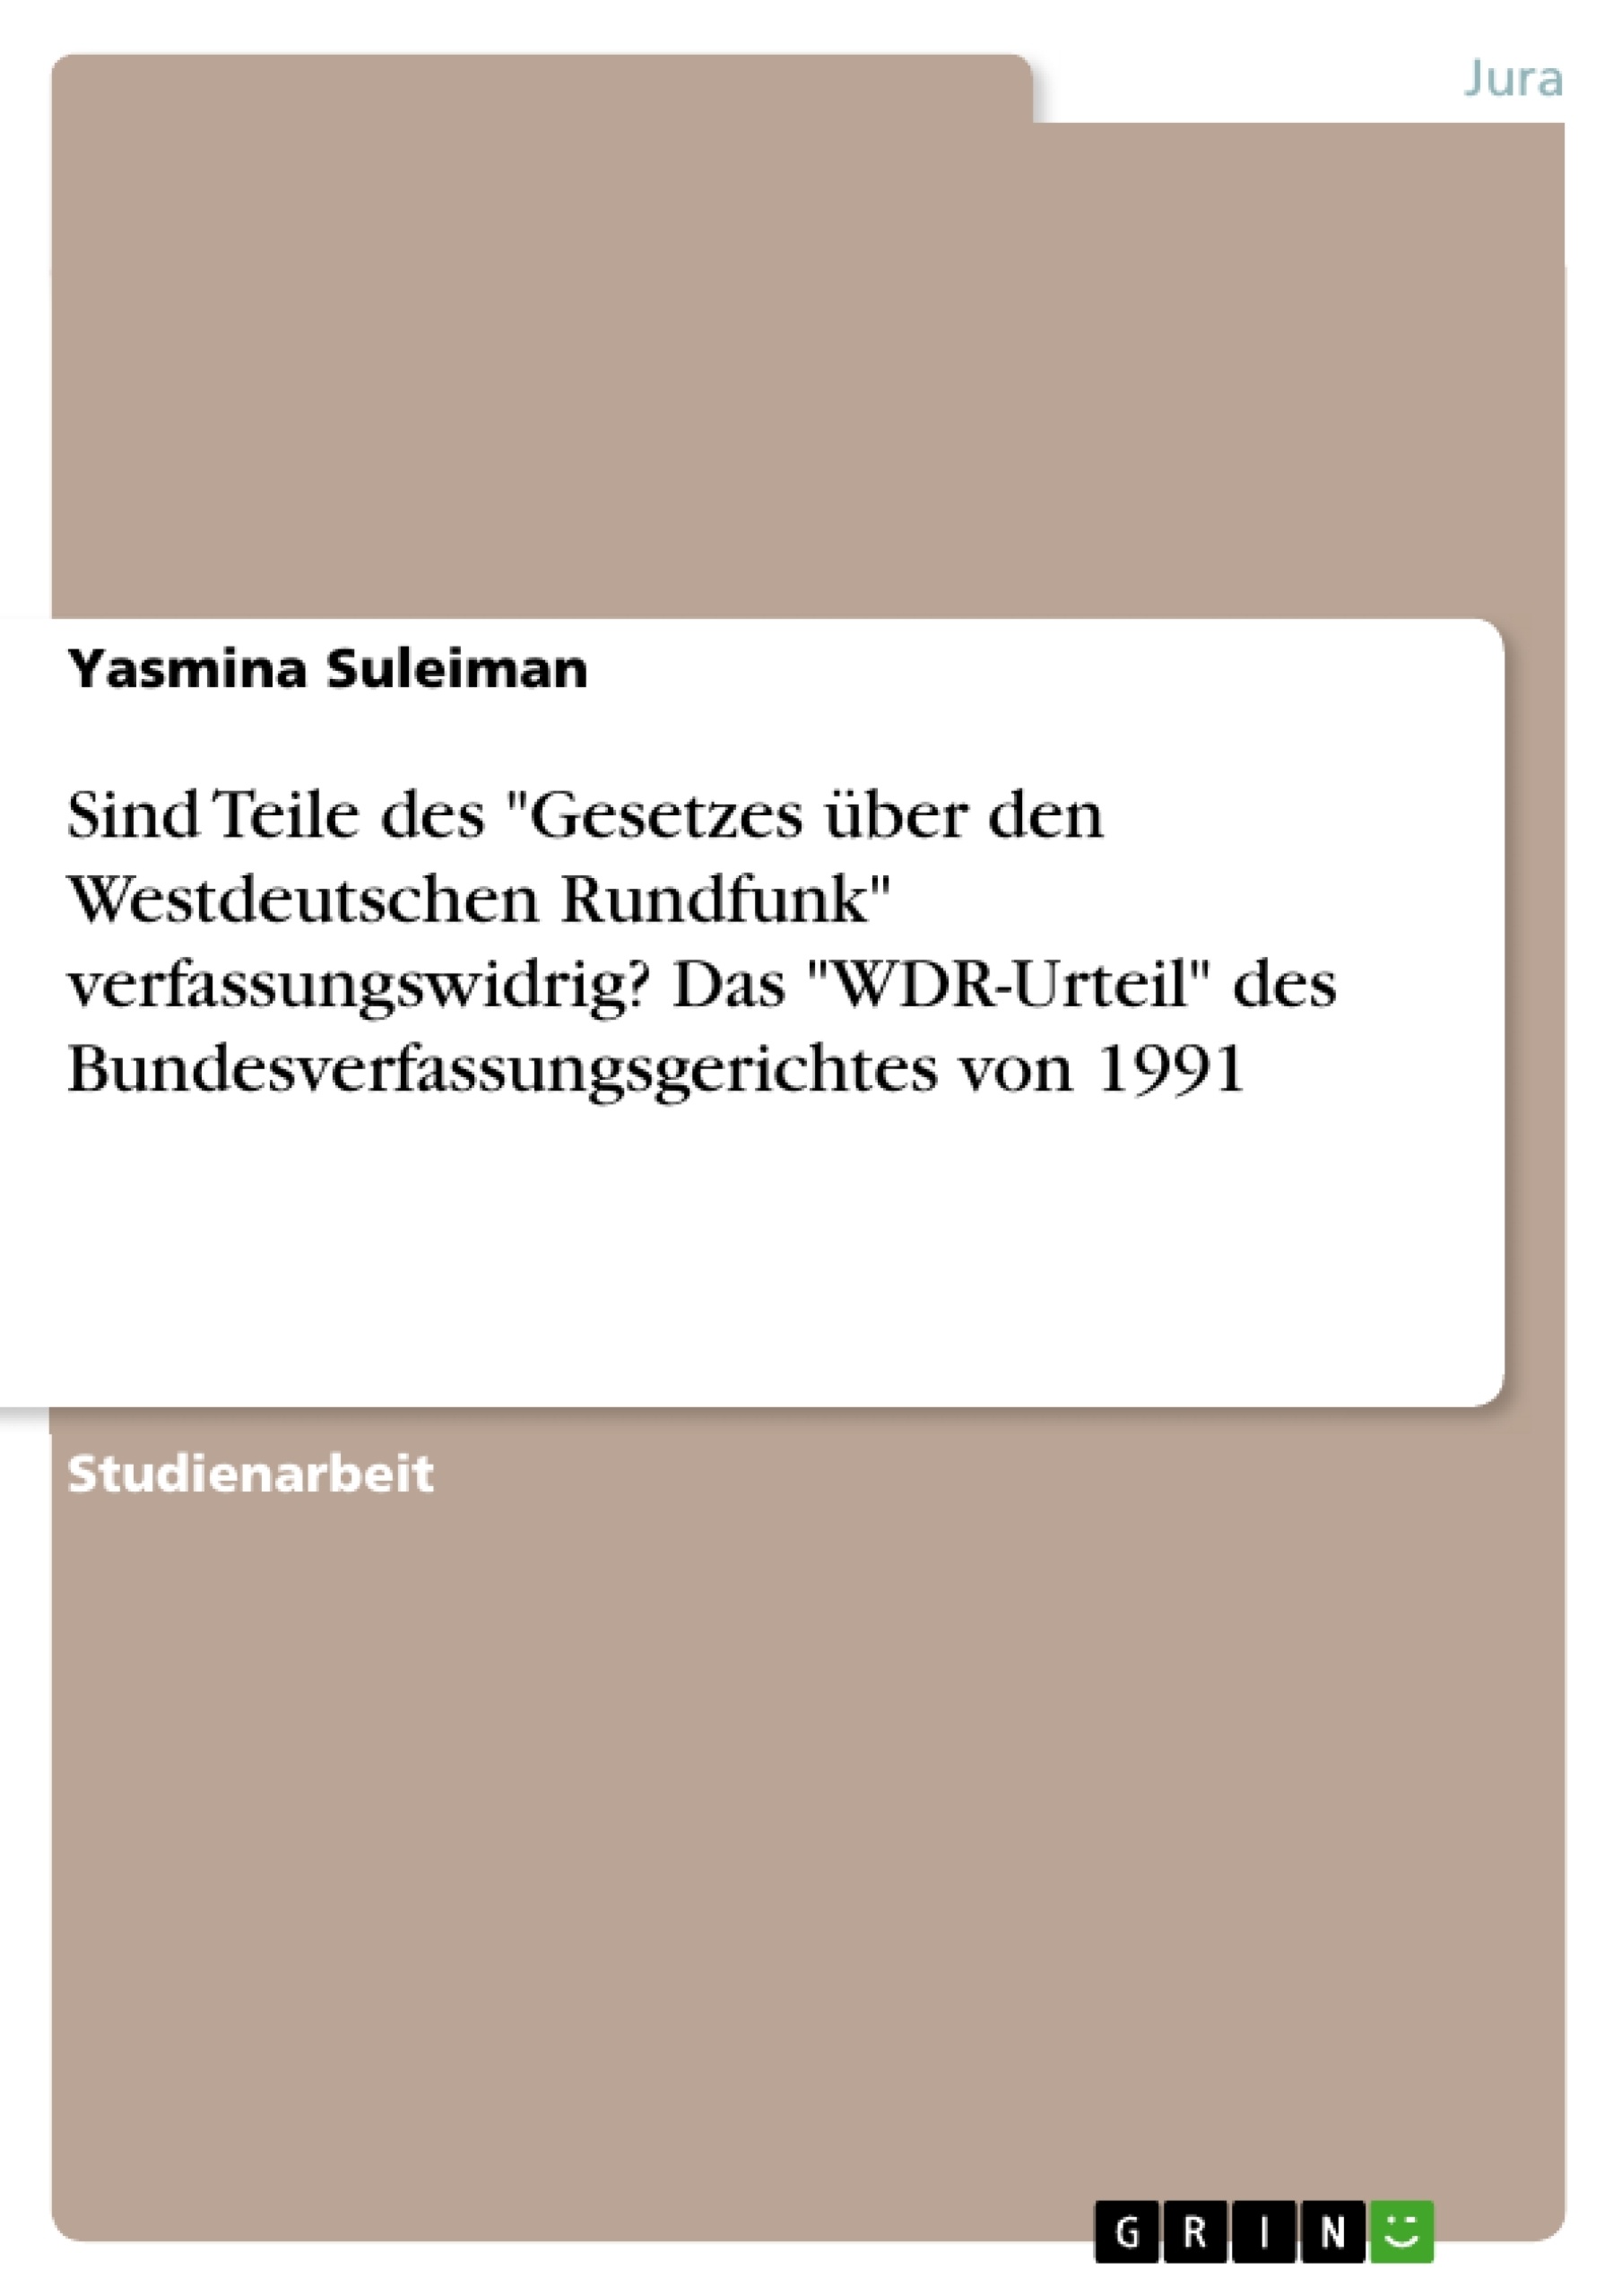 Title: Sind Teile des  "Gesetzes über den Westdeutschen Rundfunk" verfassungswidrig? Das "WDR-Urteil" des Bundesverfassungsgerichtes von 1991